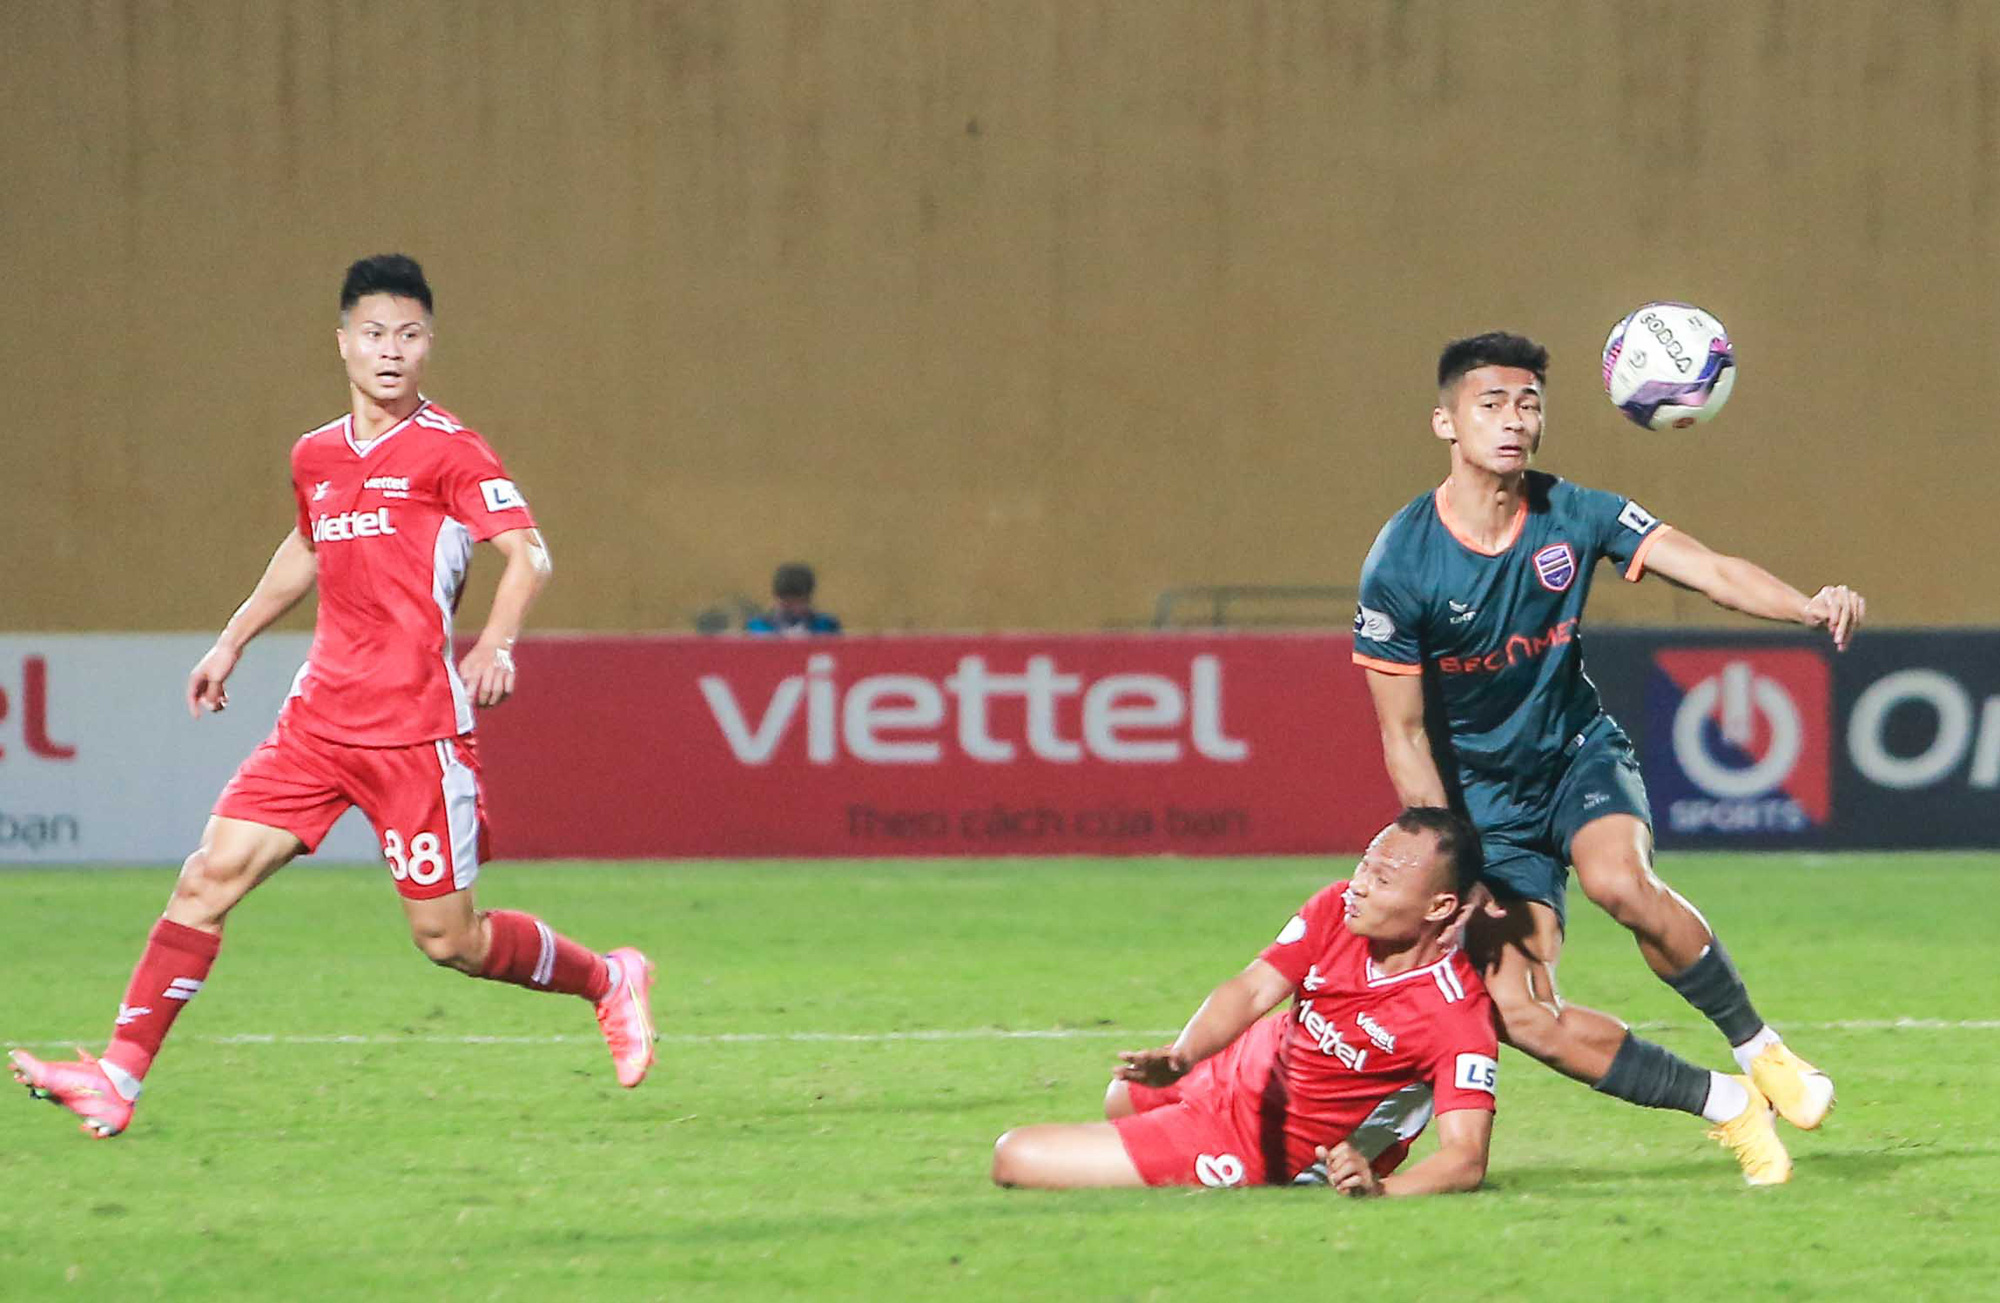 Ngọc Hải trở lại ghi bàn giúp CLB Viettel thắng đậm trước Bình Dương - Ảnh 9.